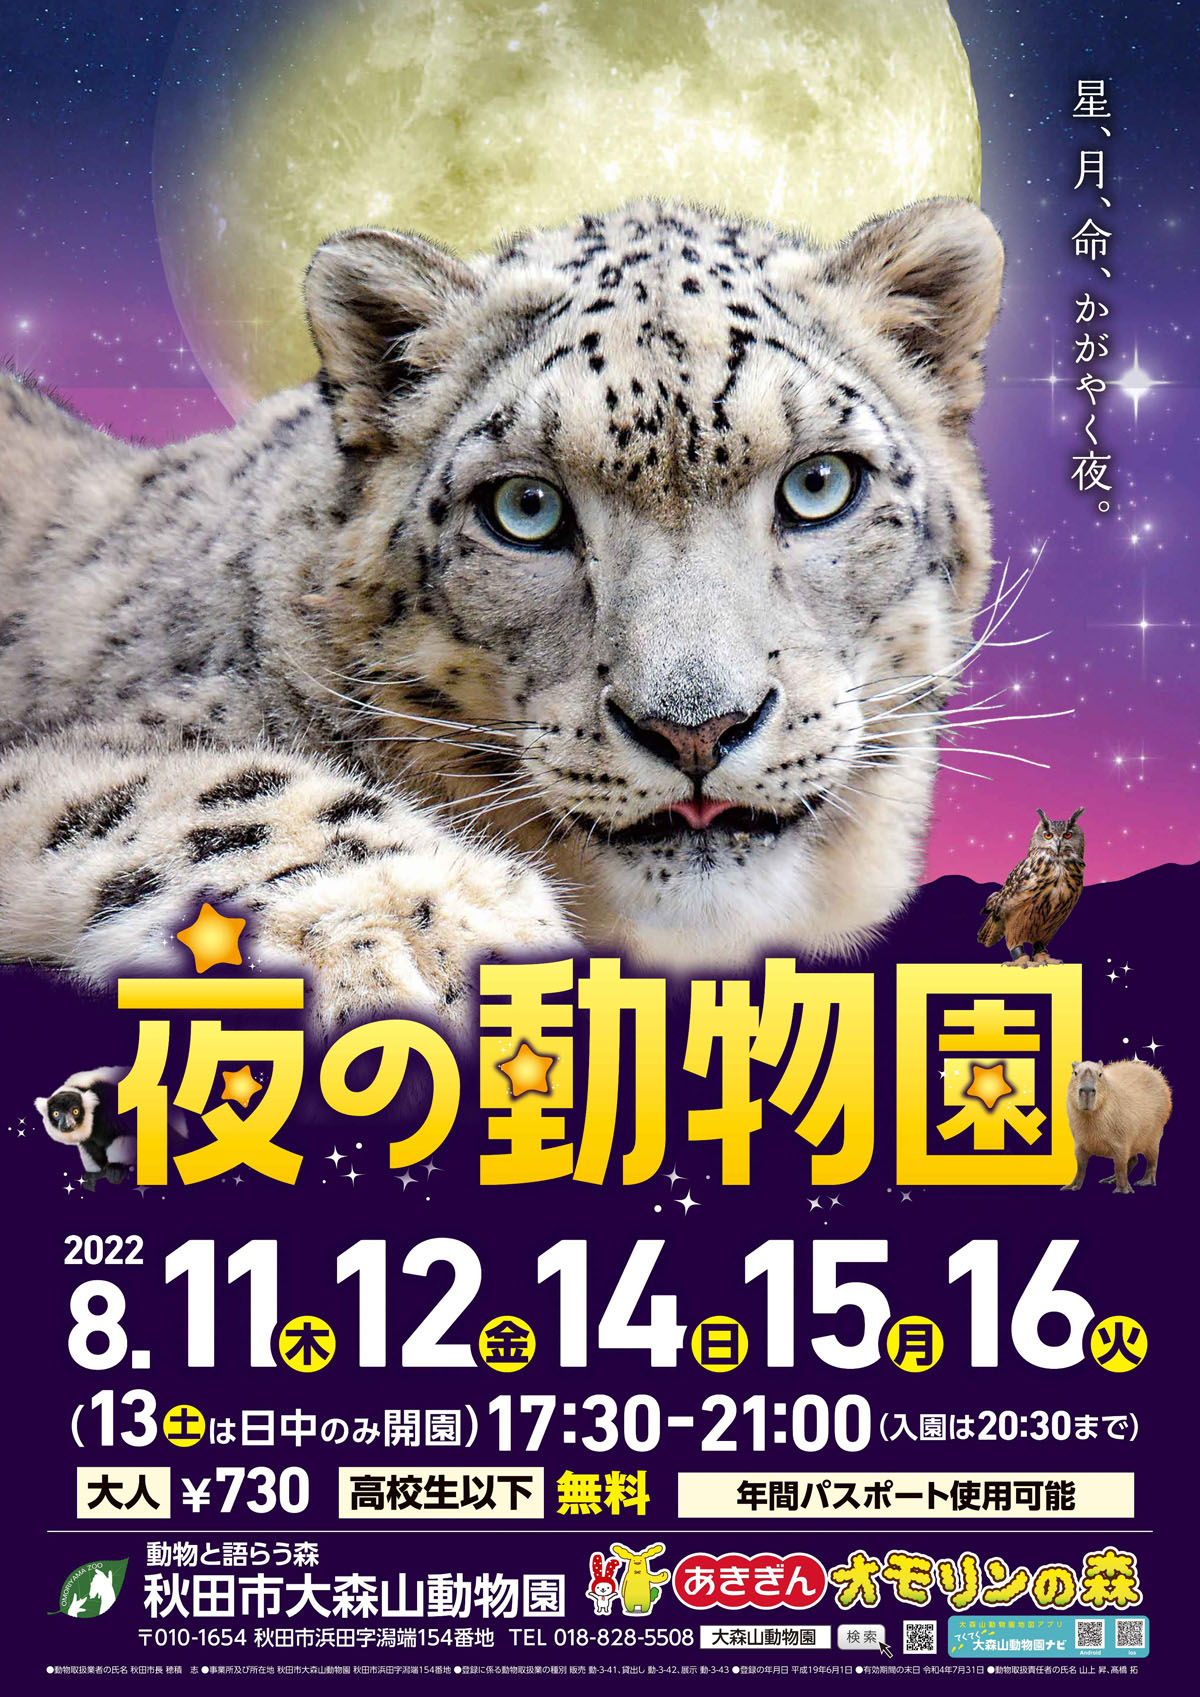 秋田市 大森山動物園で22年も 夜の動物園 を開催